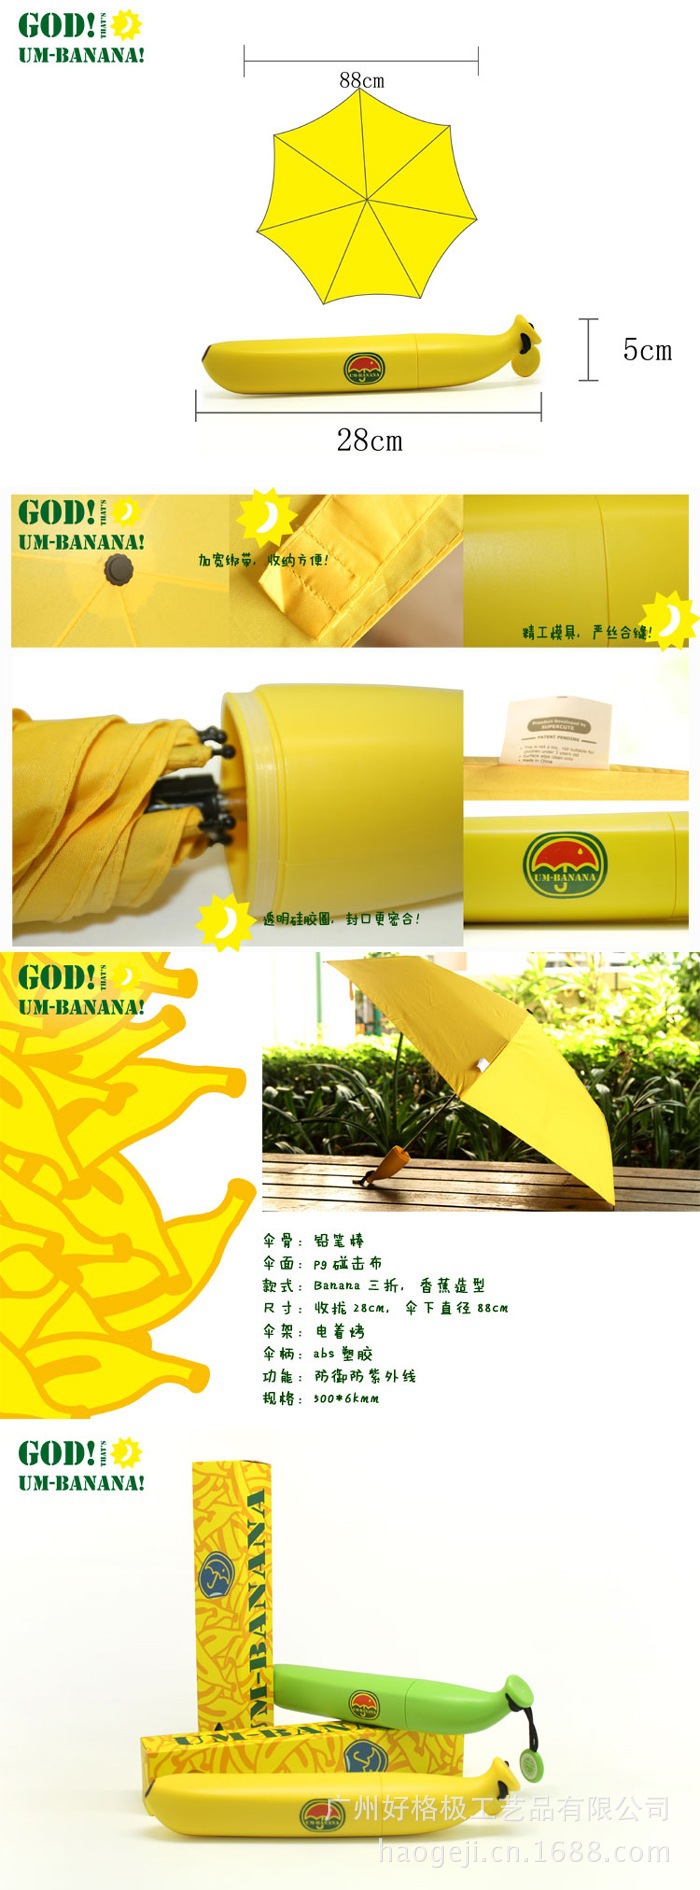 Banana umbrella (5)